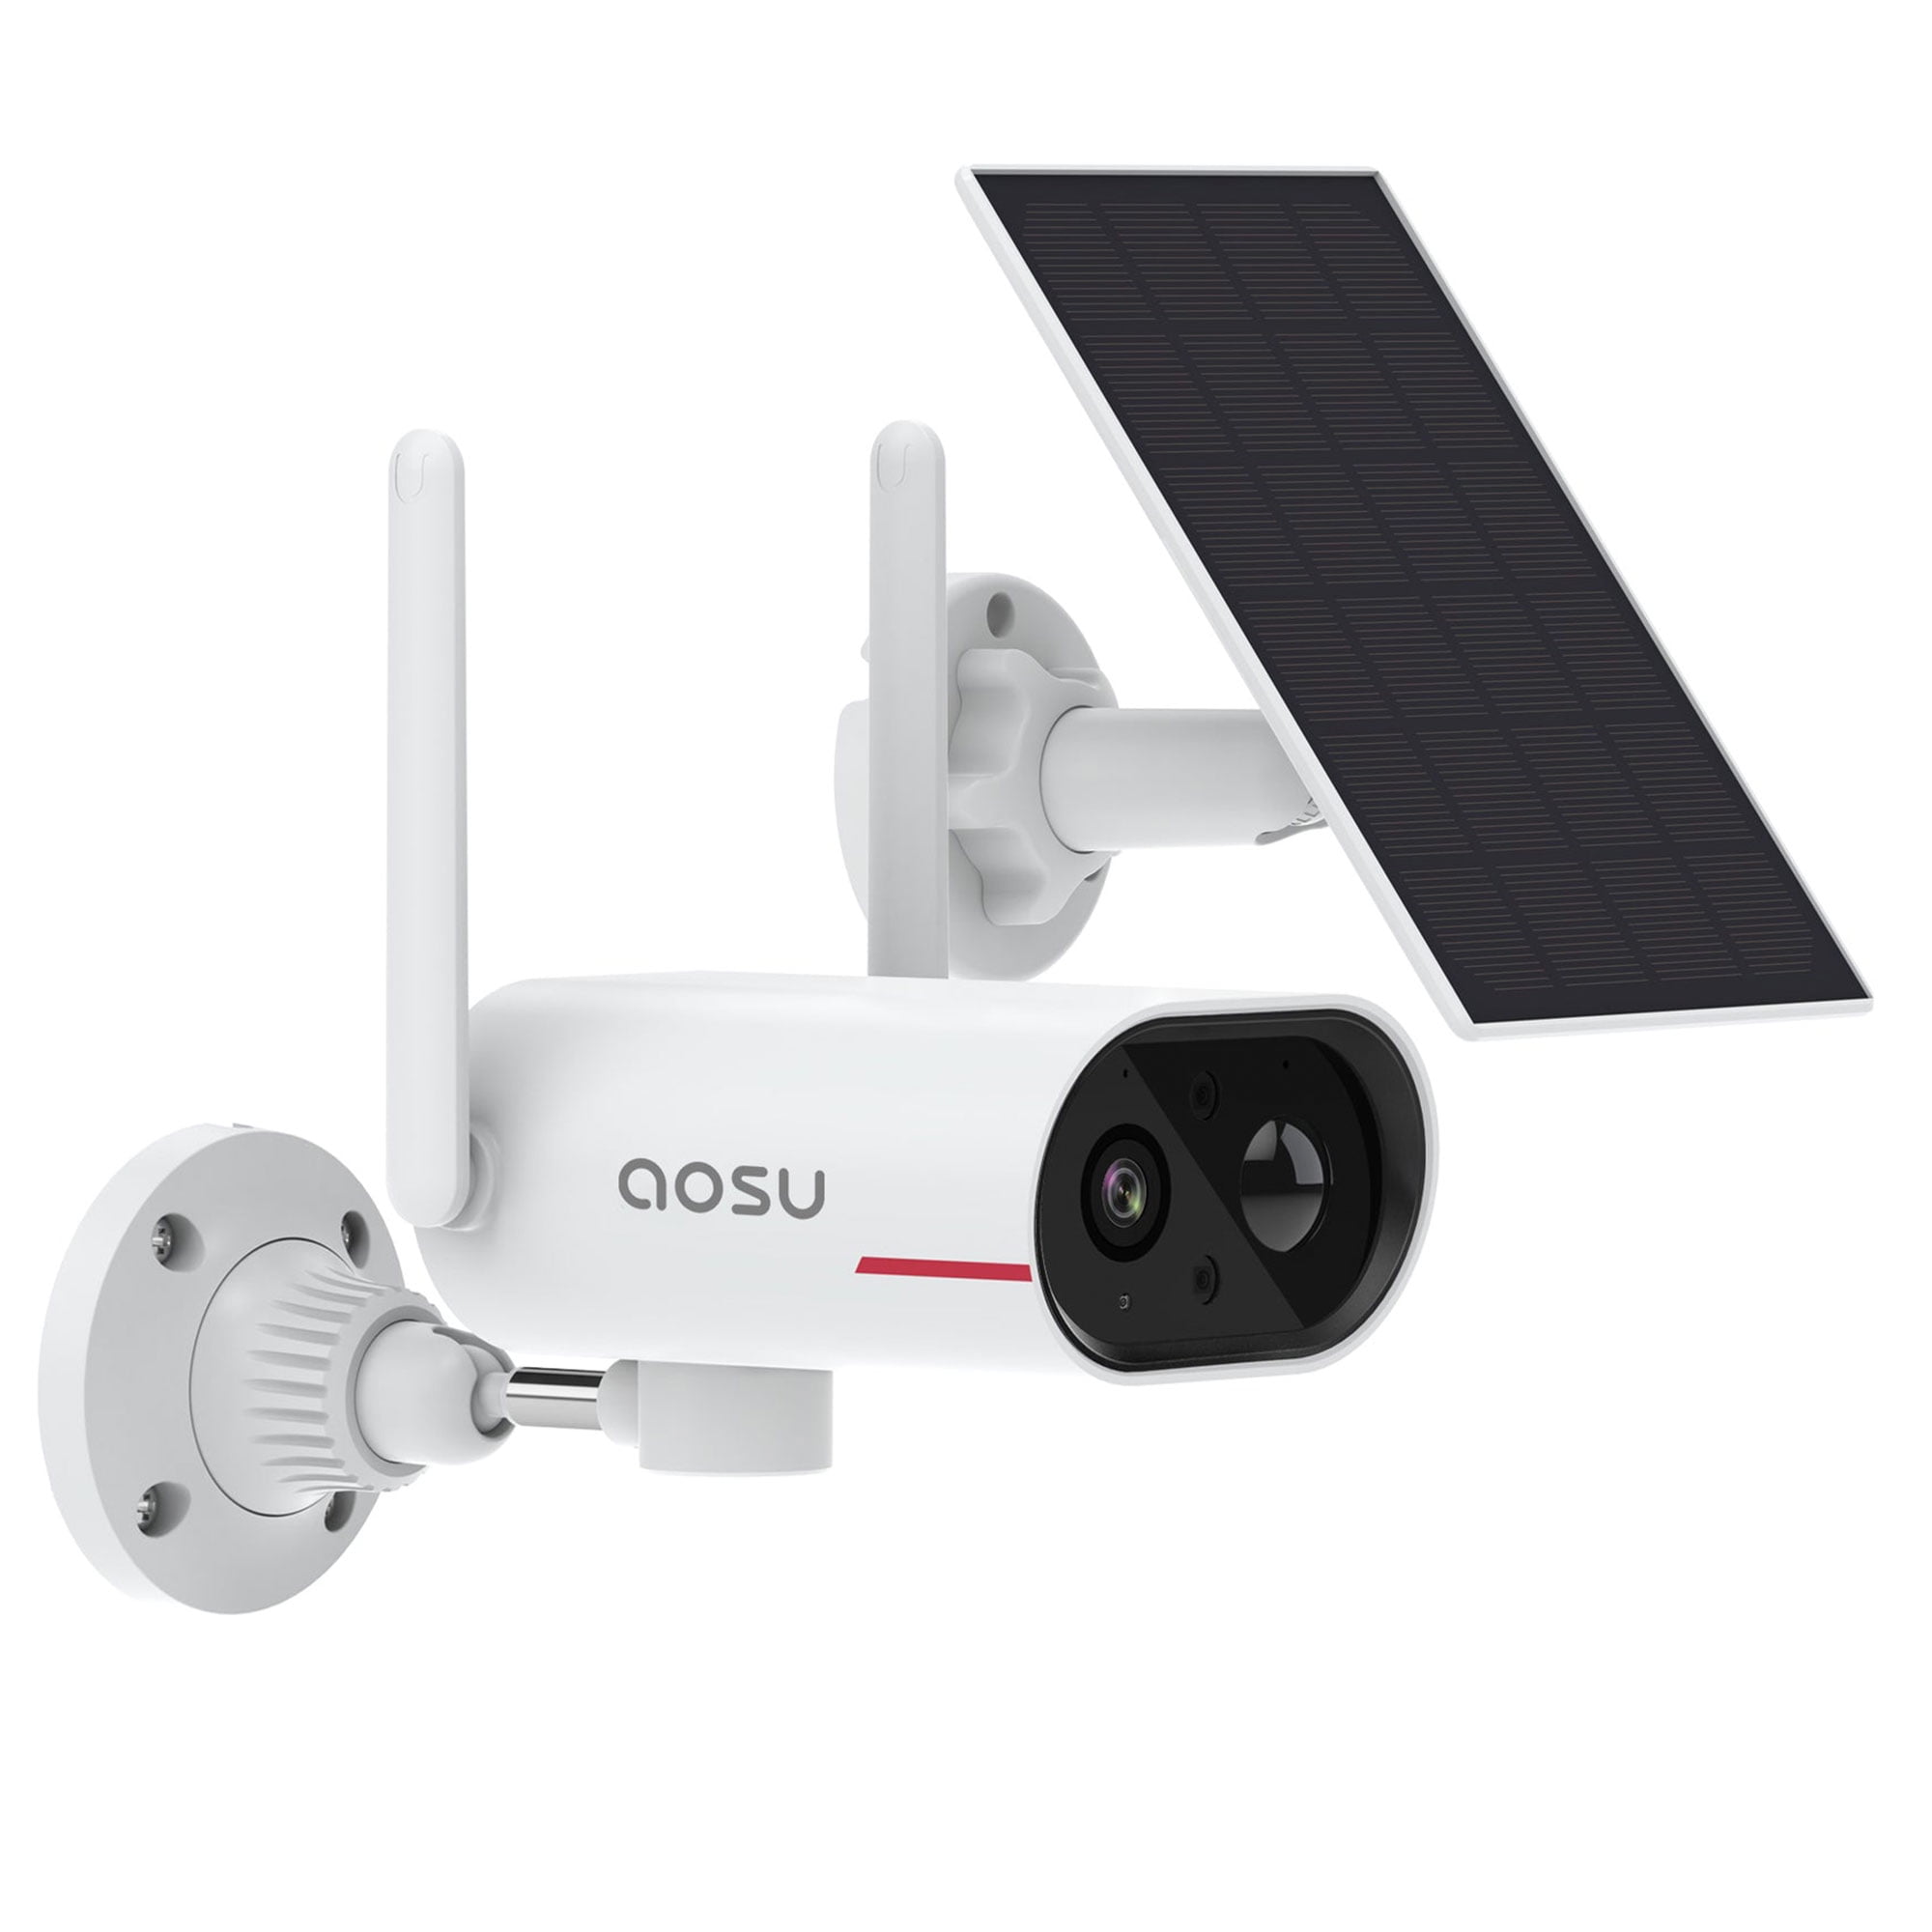 DEKCO 5MP Camera Surveillance WiFi Exterieure sans Fil, Solaire